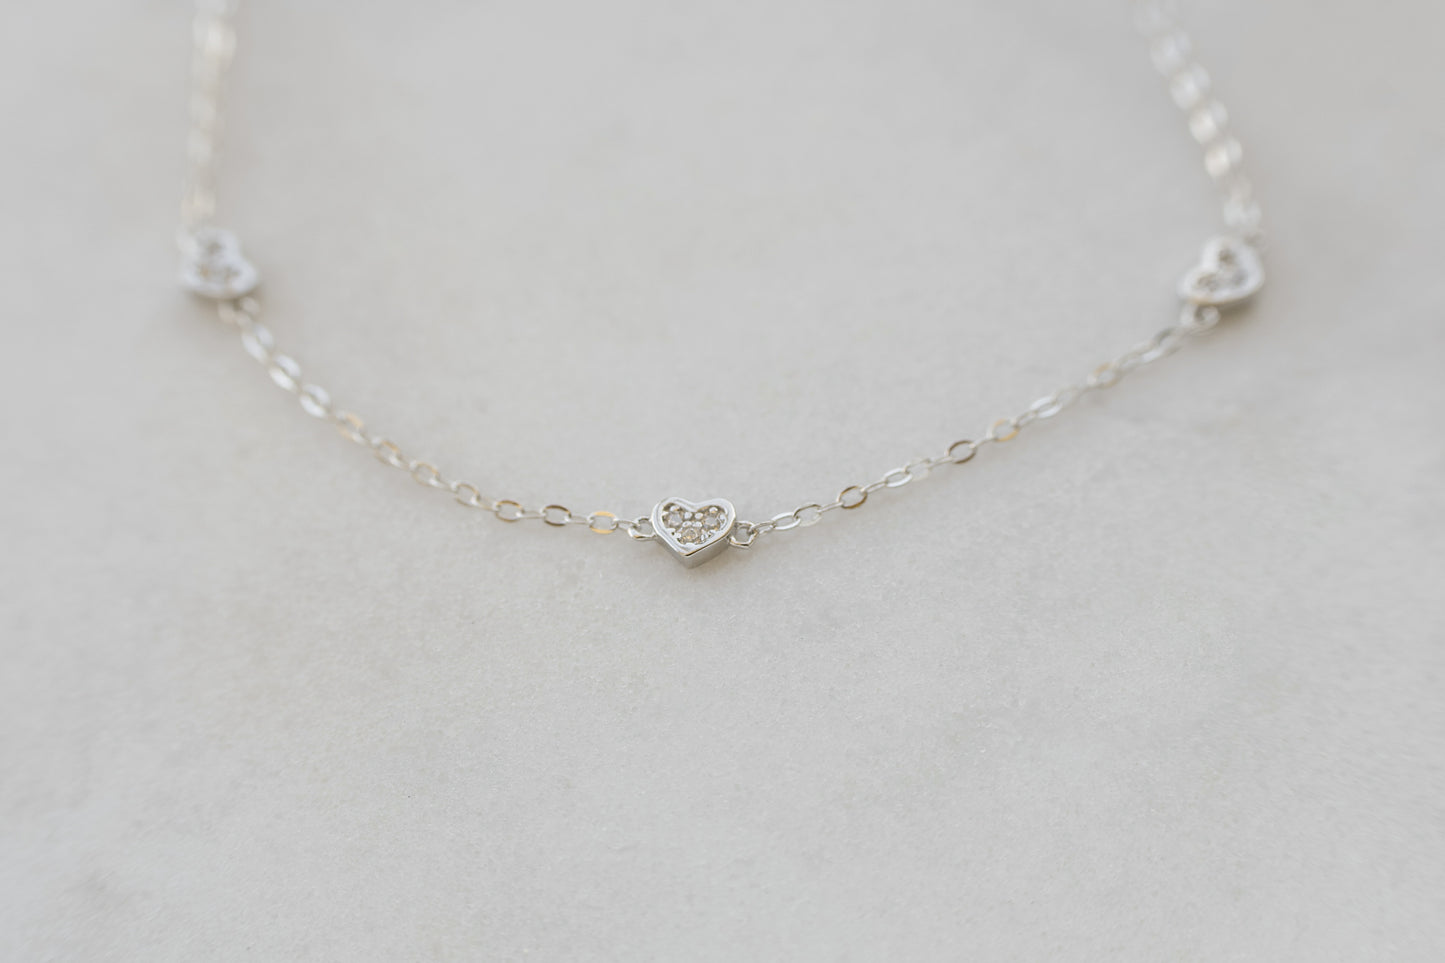 Dainty Silver Triple Heart Bracelet